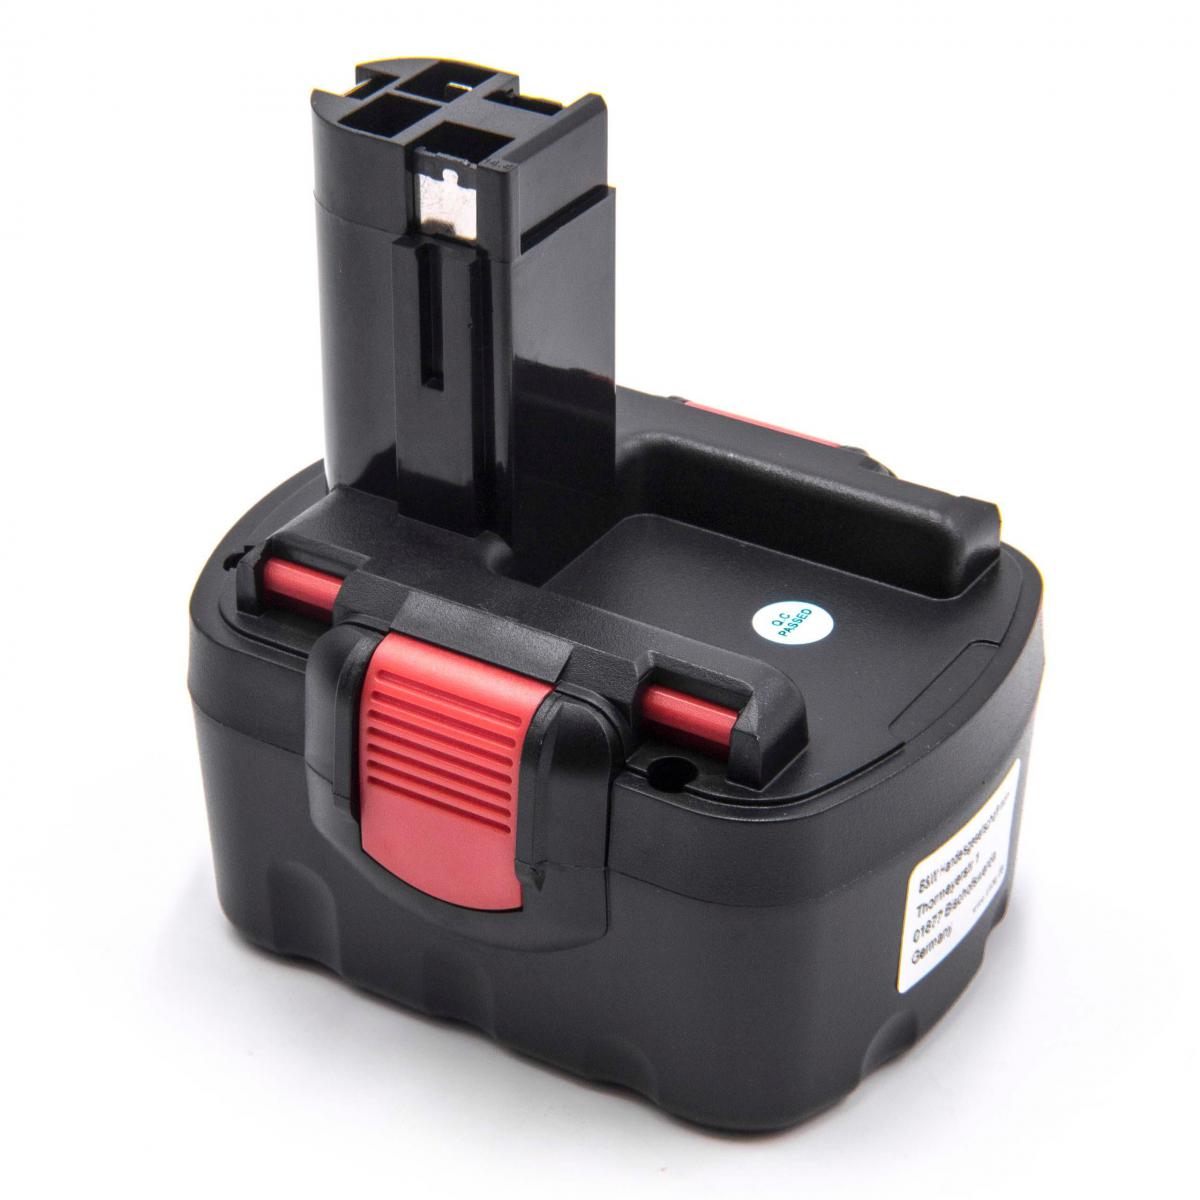 Vhbw - vhbw Batterie compatible avec Orgapack OR-T 300 outil électrique (1500mAh NiMH 14,4V) - Clouterie